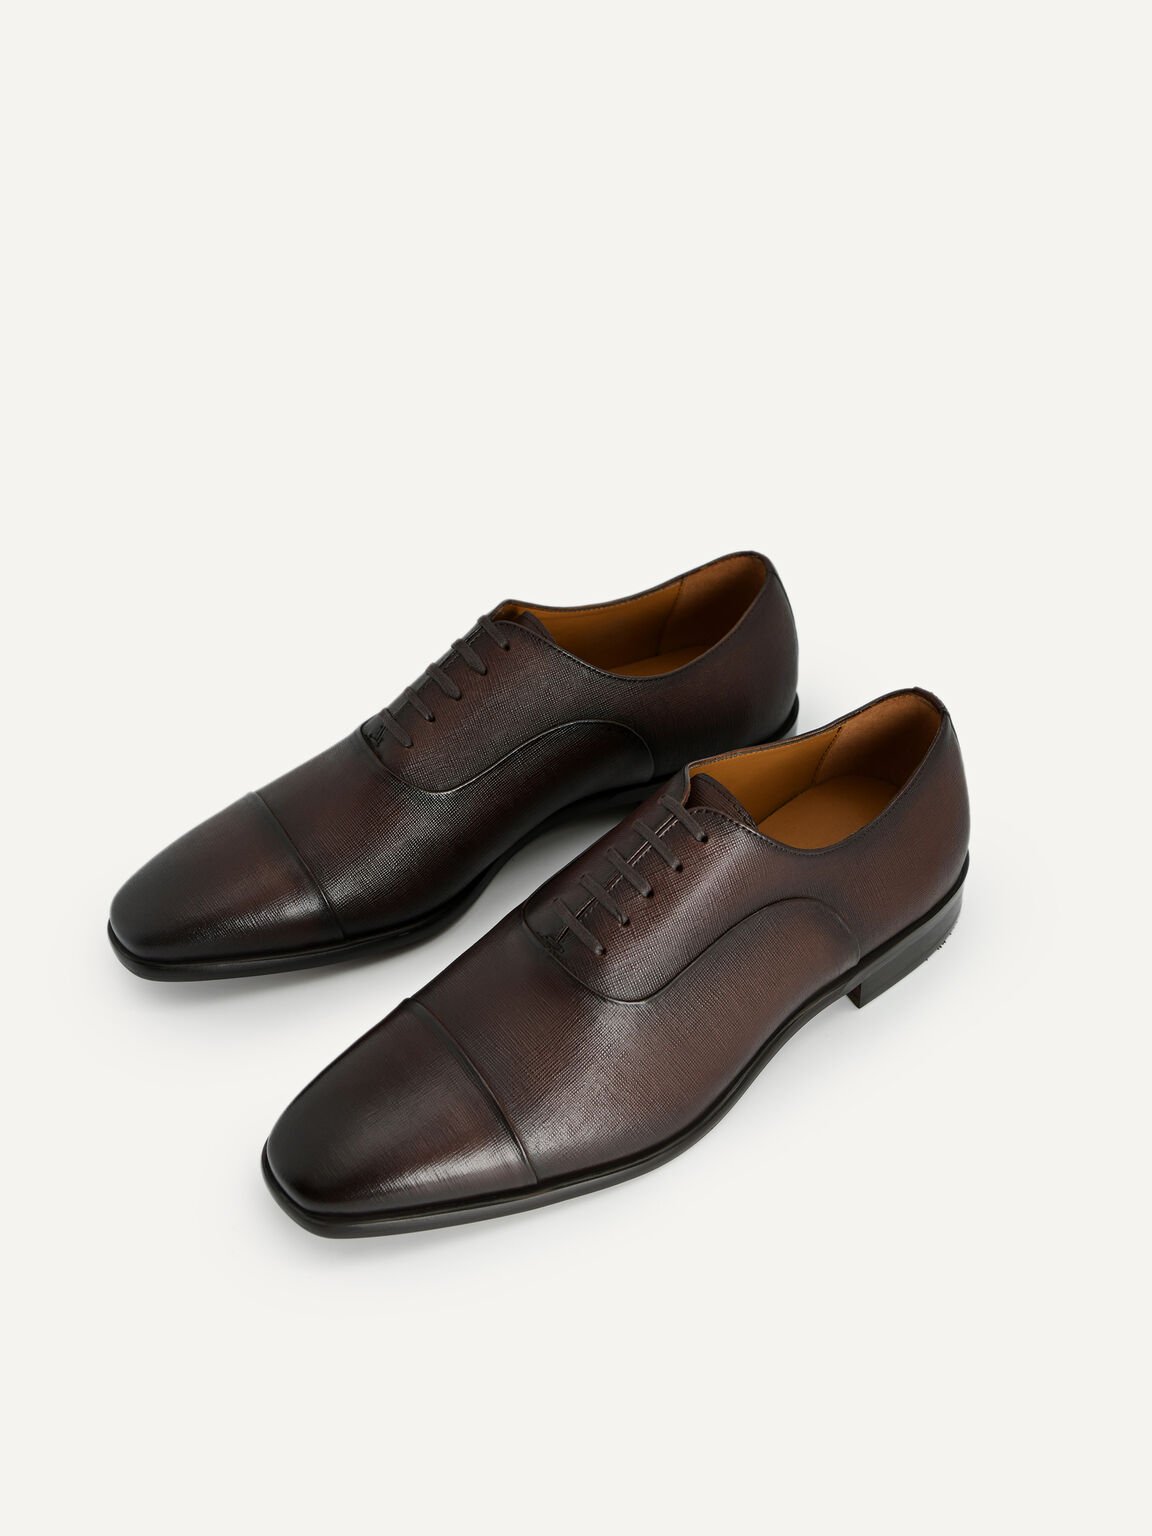 紋理皮革牛津鞋, 棕色, hi-res